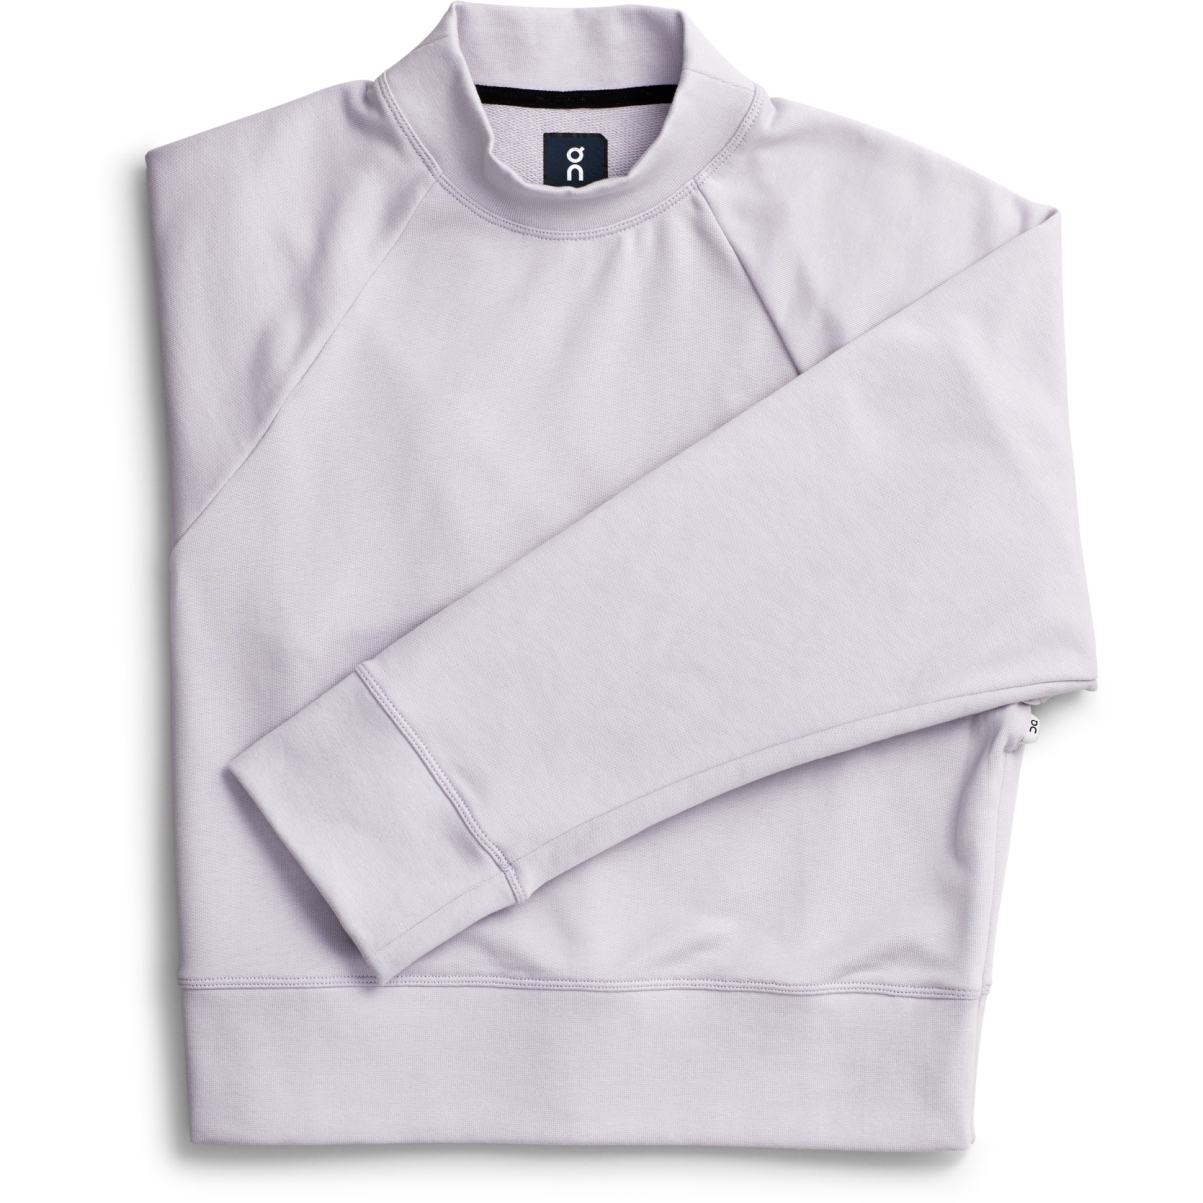 Produktbild von On Crew Neck Damen Sweatshirt - Lilac